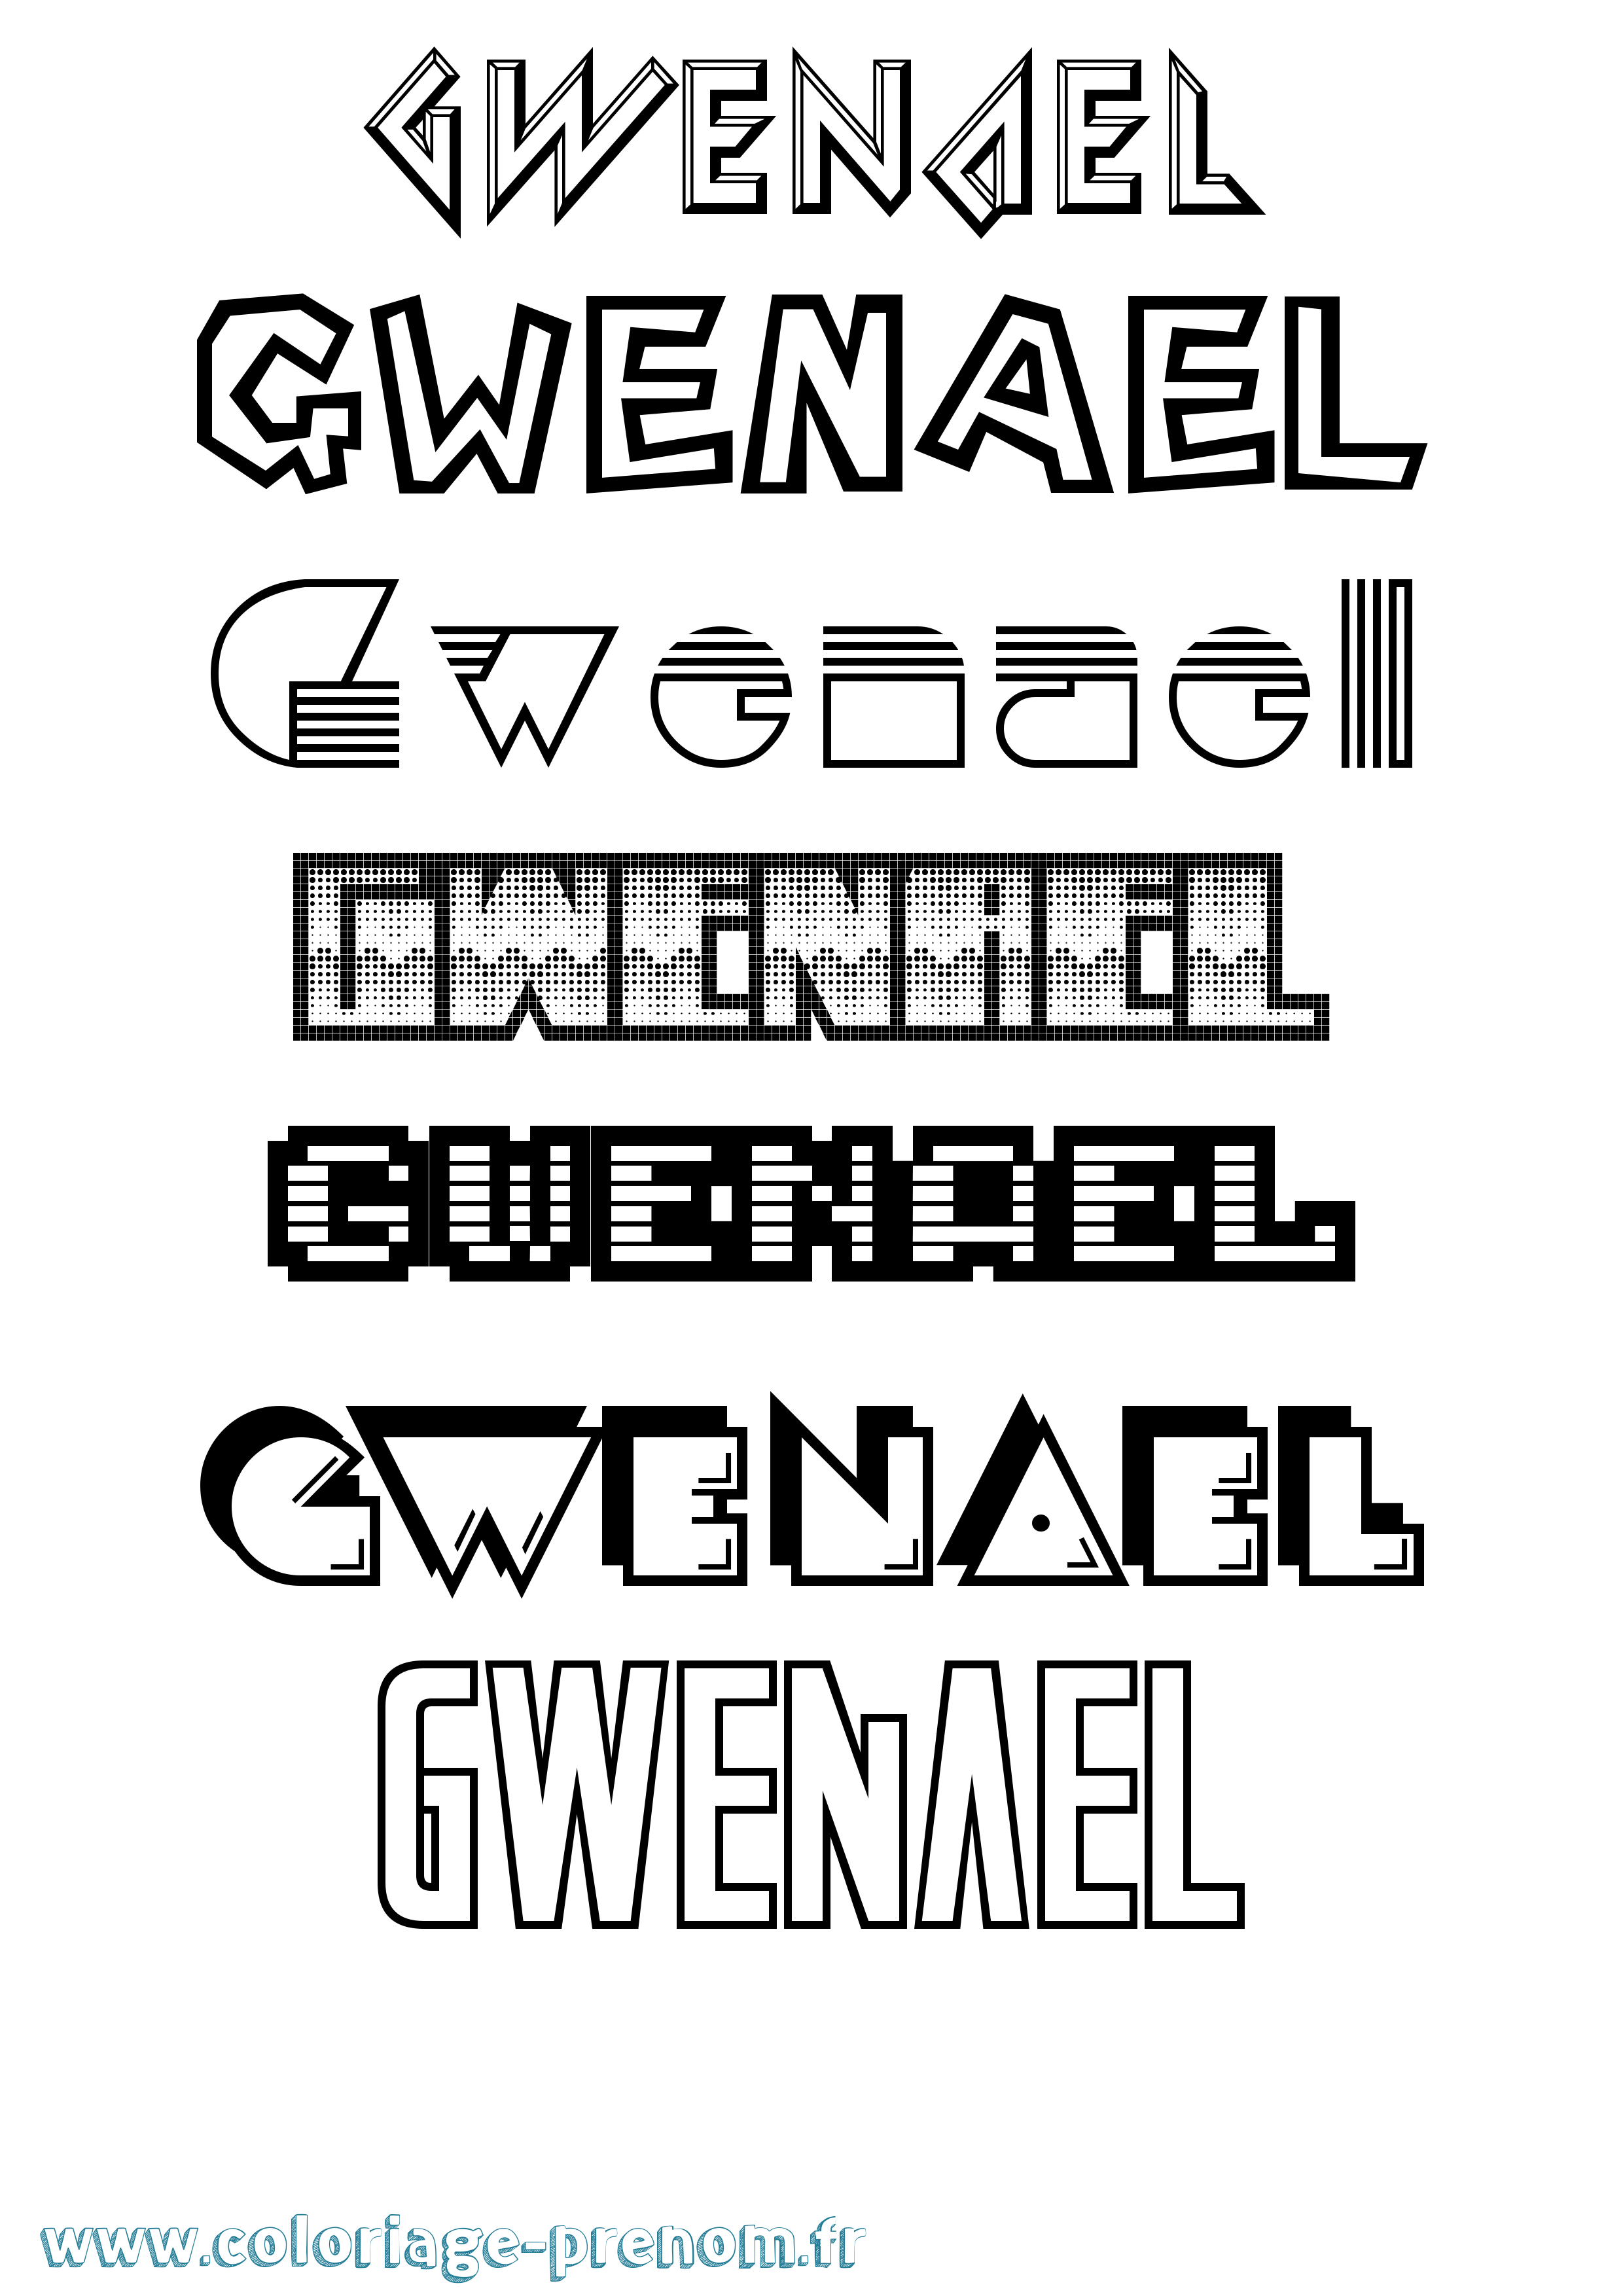 Coloriage prénom Gwenael Jeux Vidéos